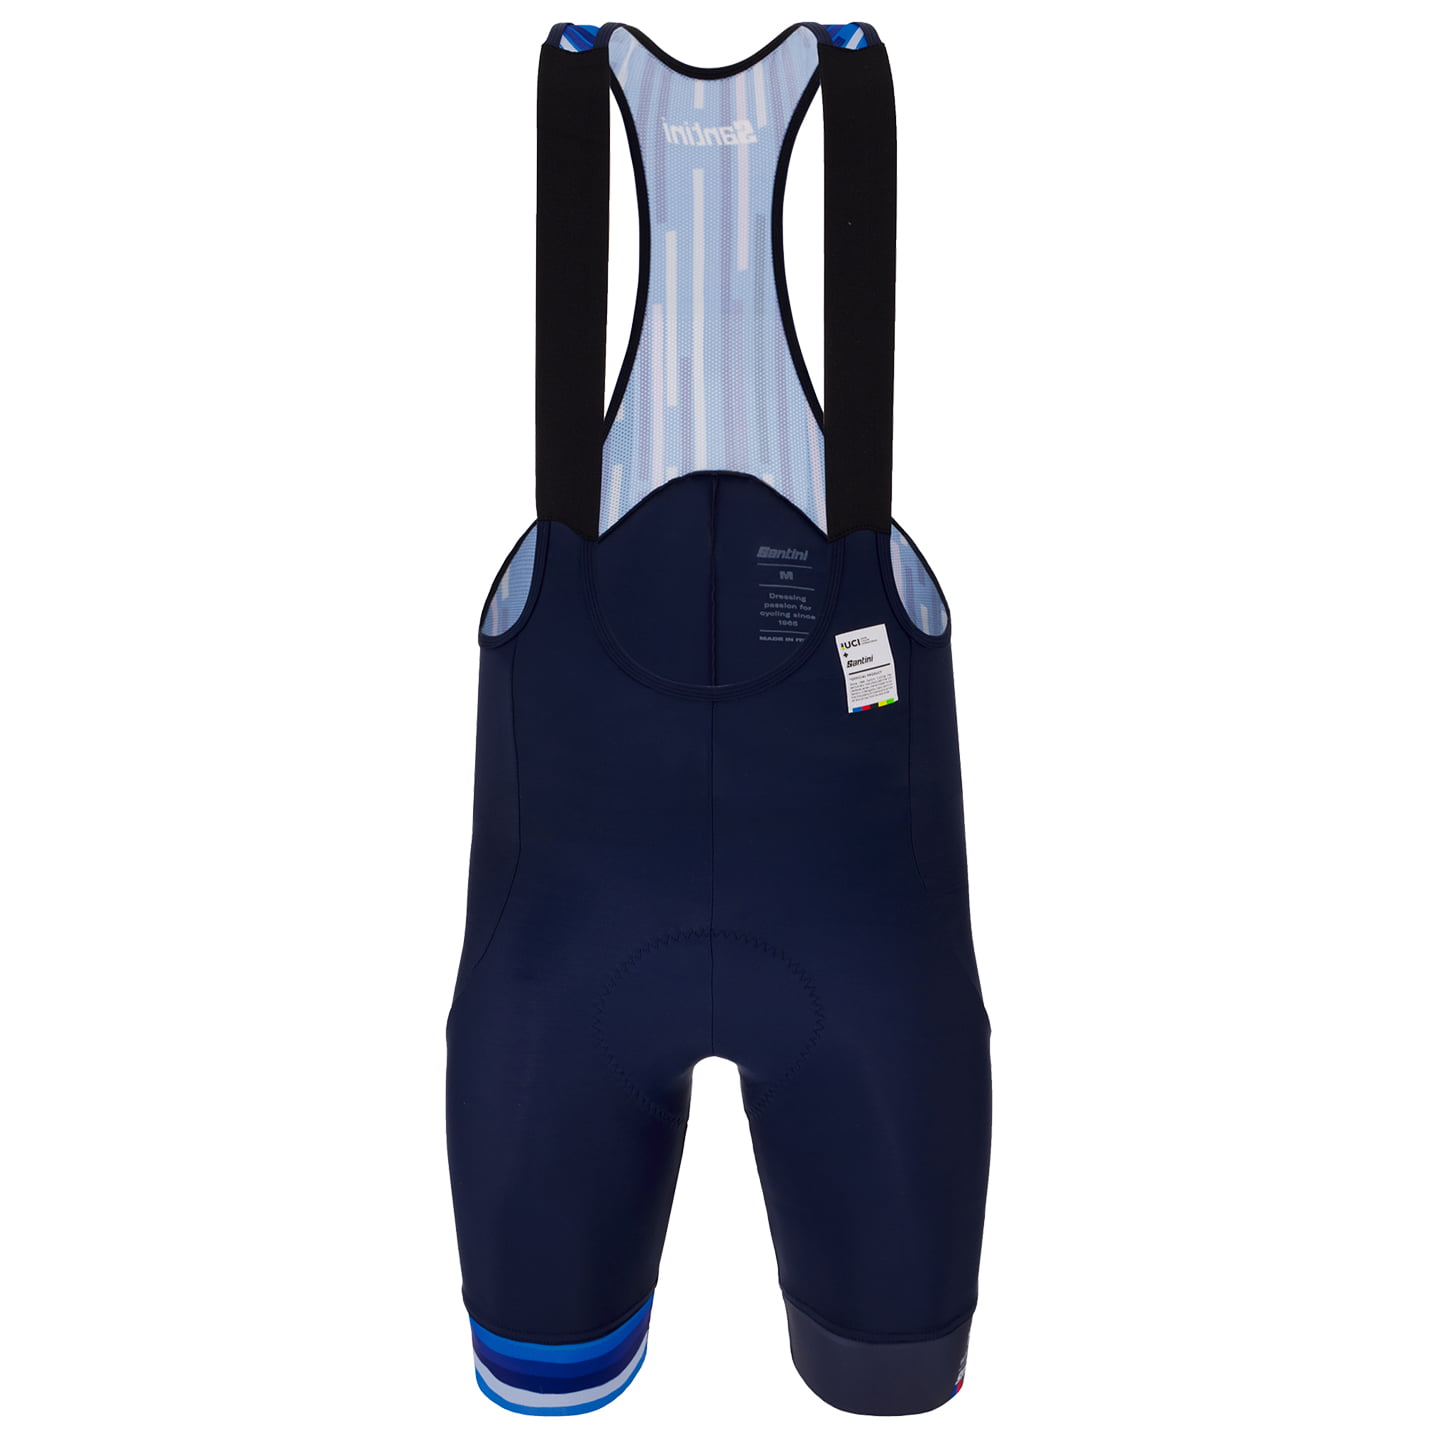 UCI GRANDI CAMPIONI Bib Shorts 1962 Salo del Garda 2023, for men, size S, Cycle shorts, Cycling clothing